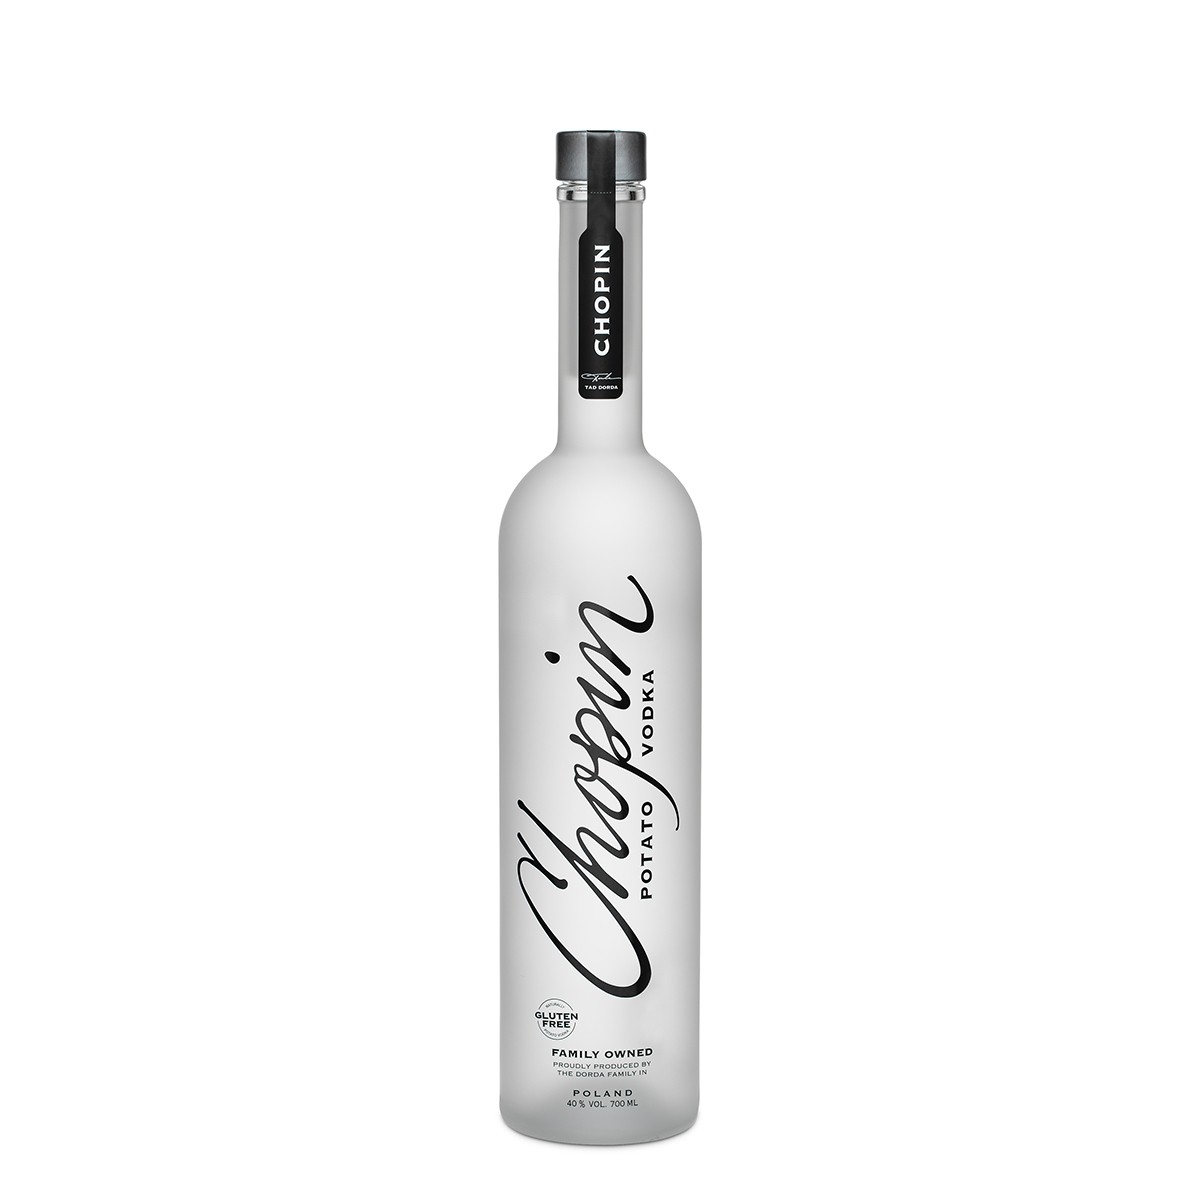 Chopin Potato Vodka 700 ml